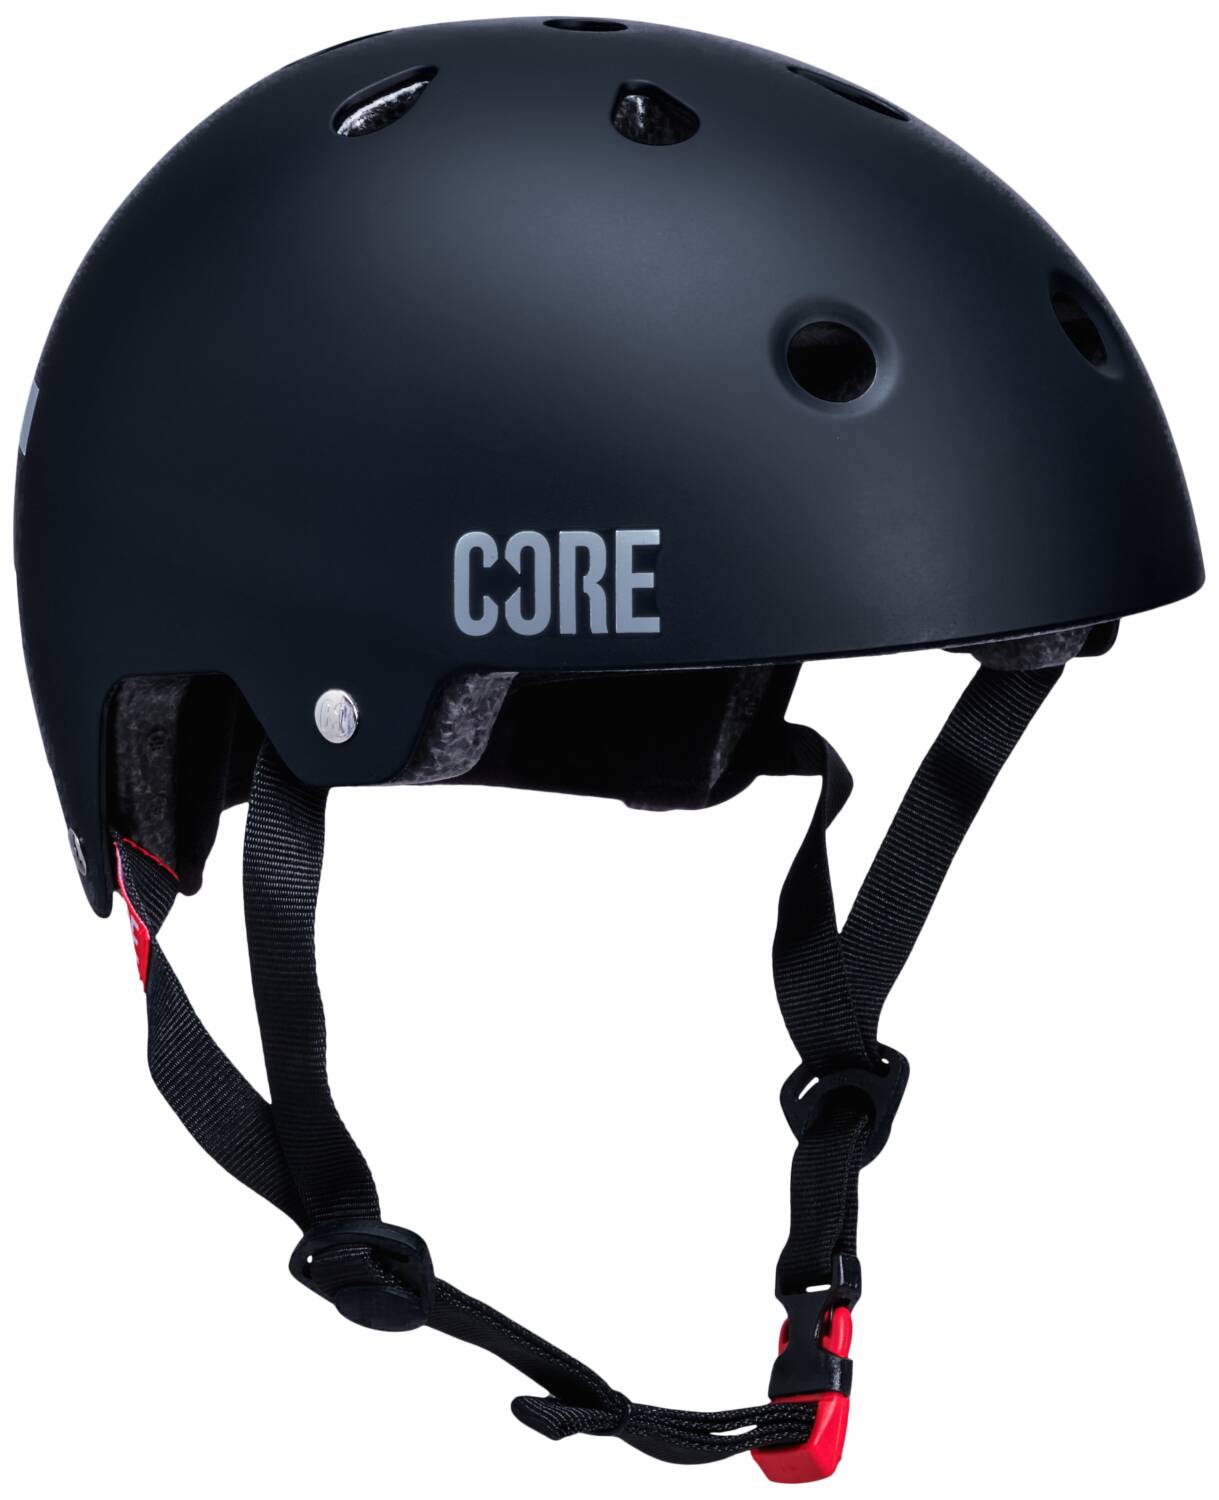 Core Street Fahrrad- und Skatehelm, Helm Sports schwarz, L/XL